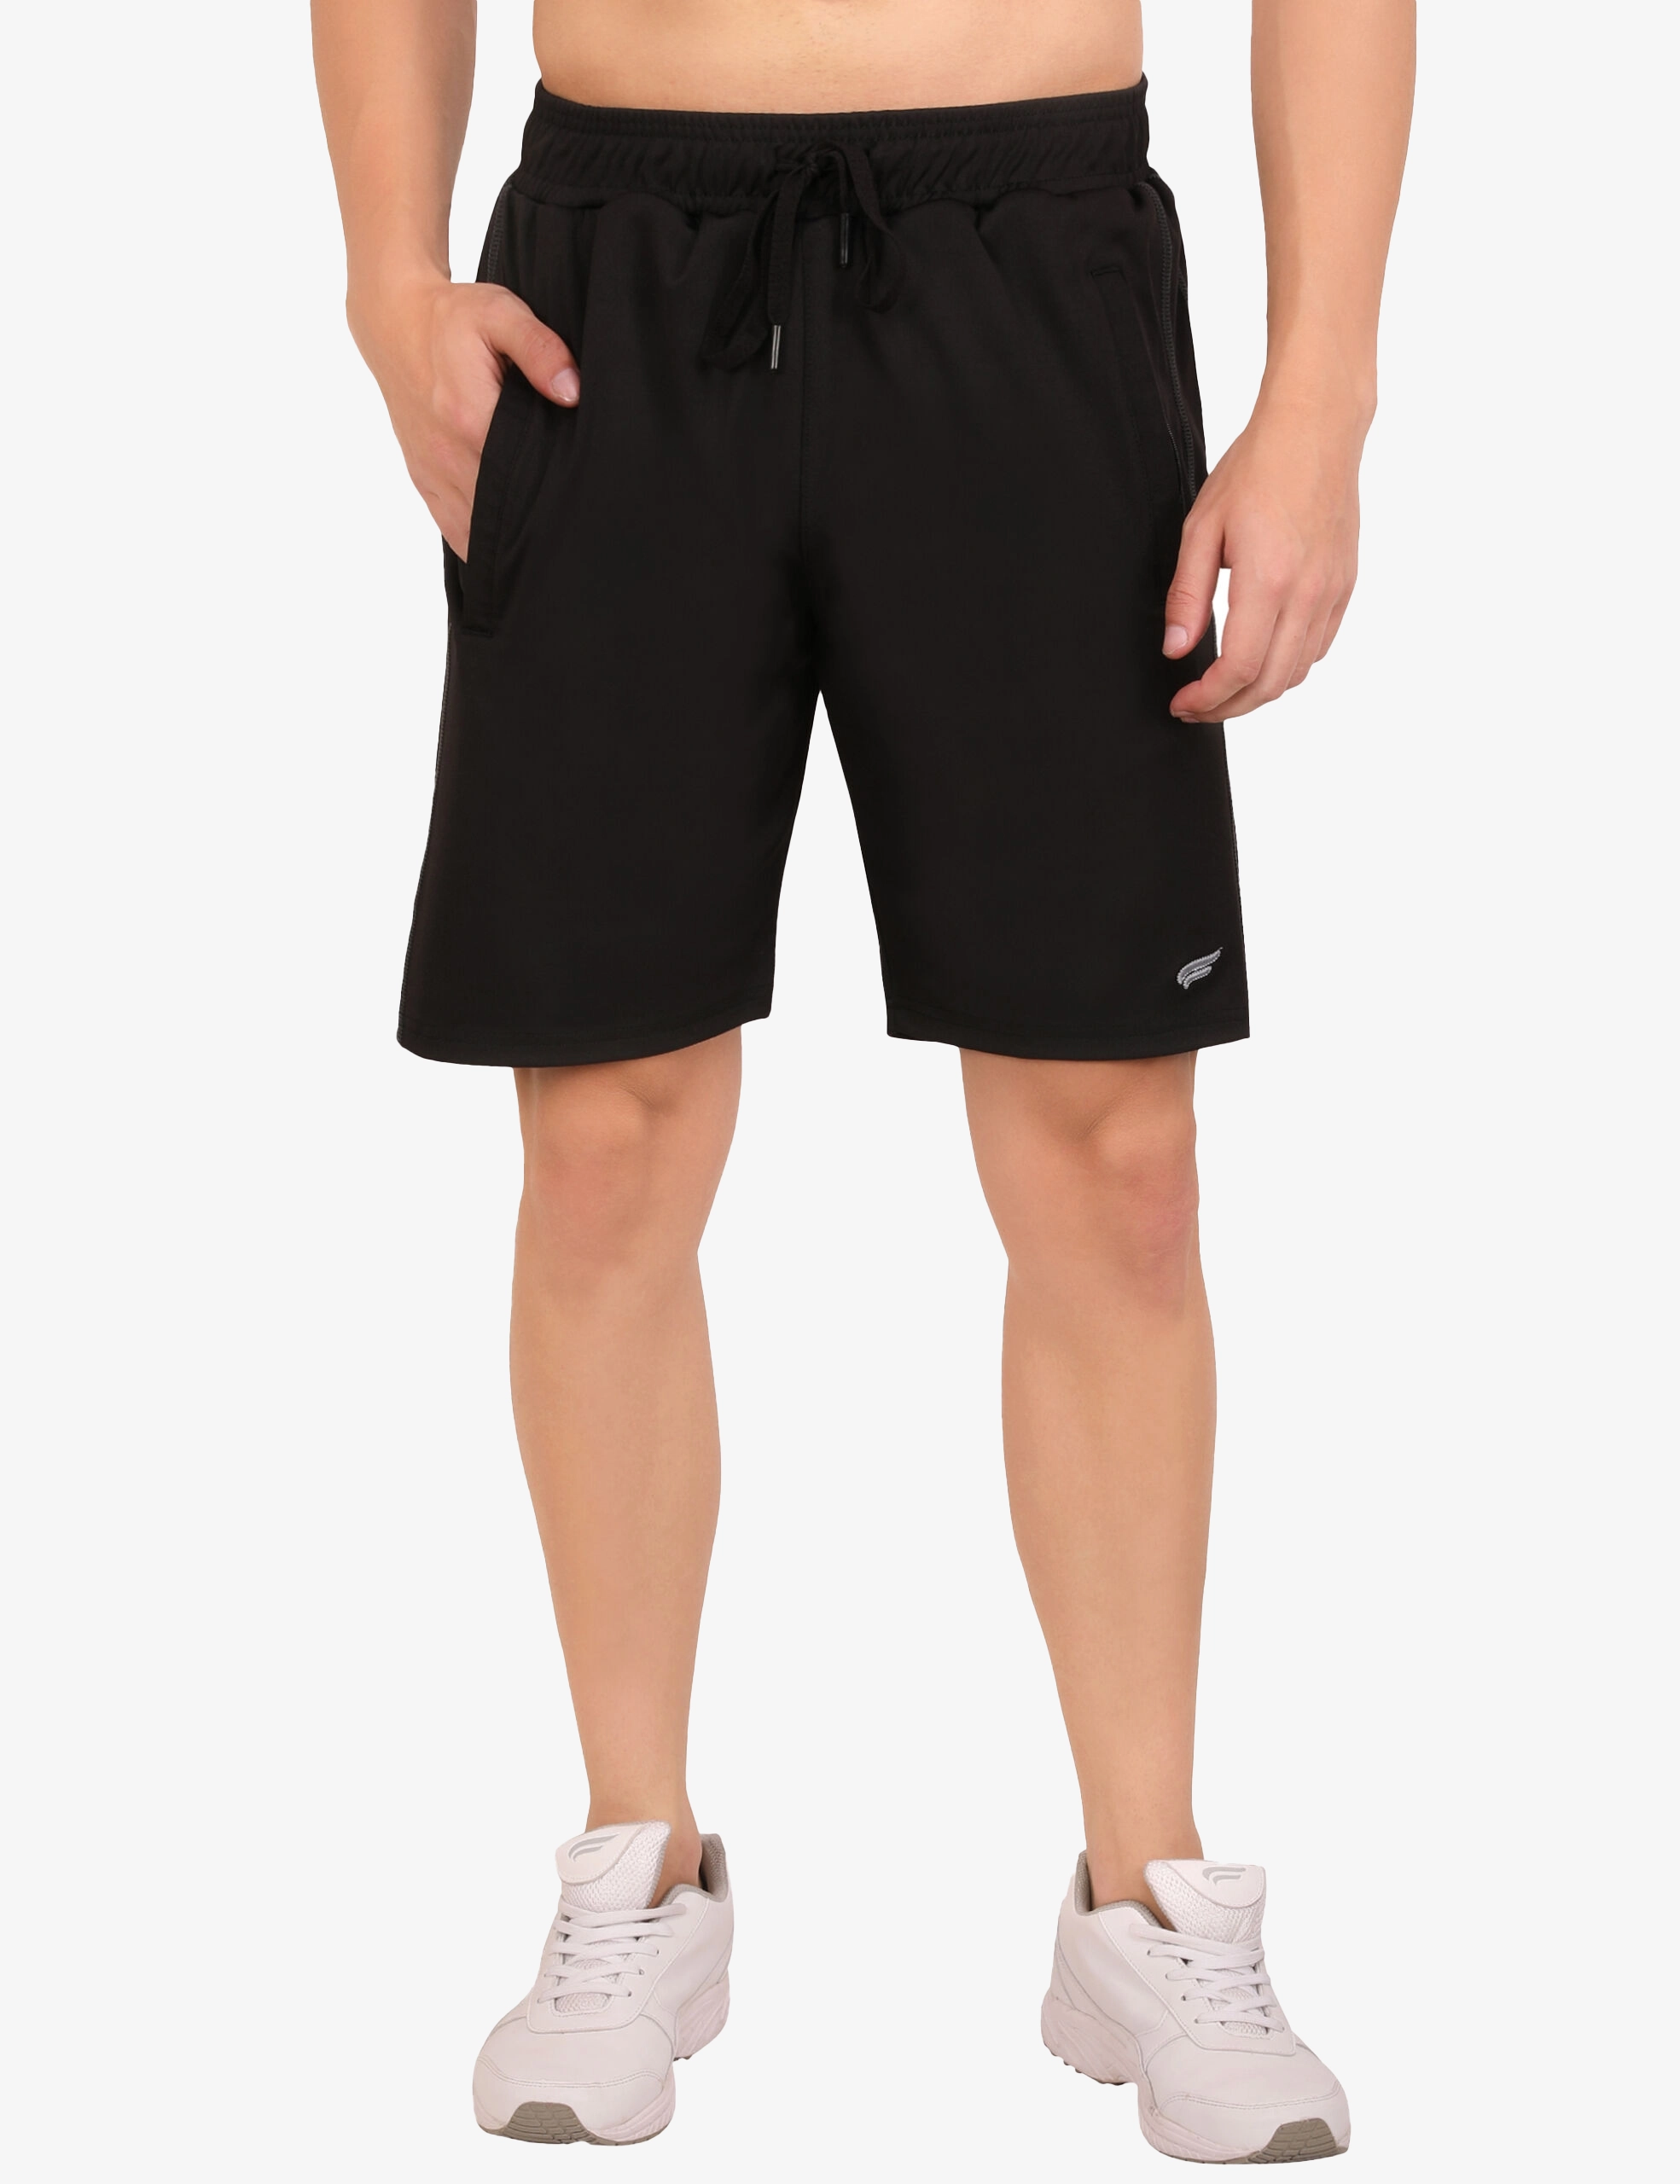 ASI Breeza Black Shorts for Men